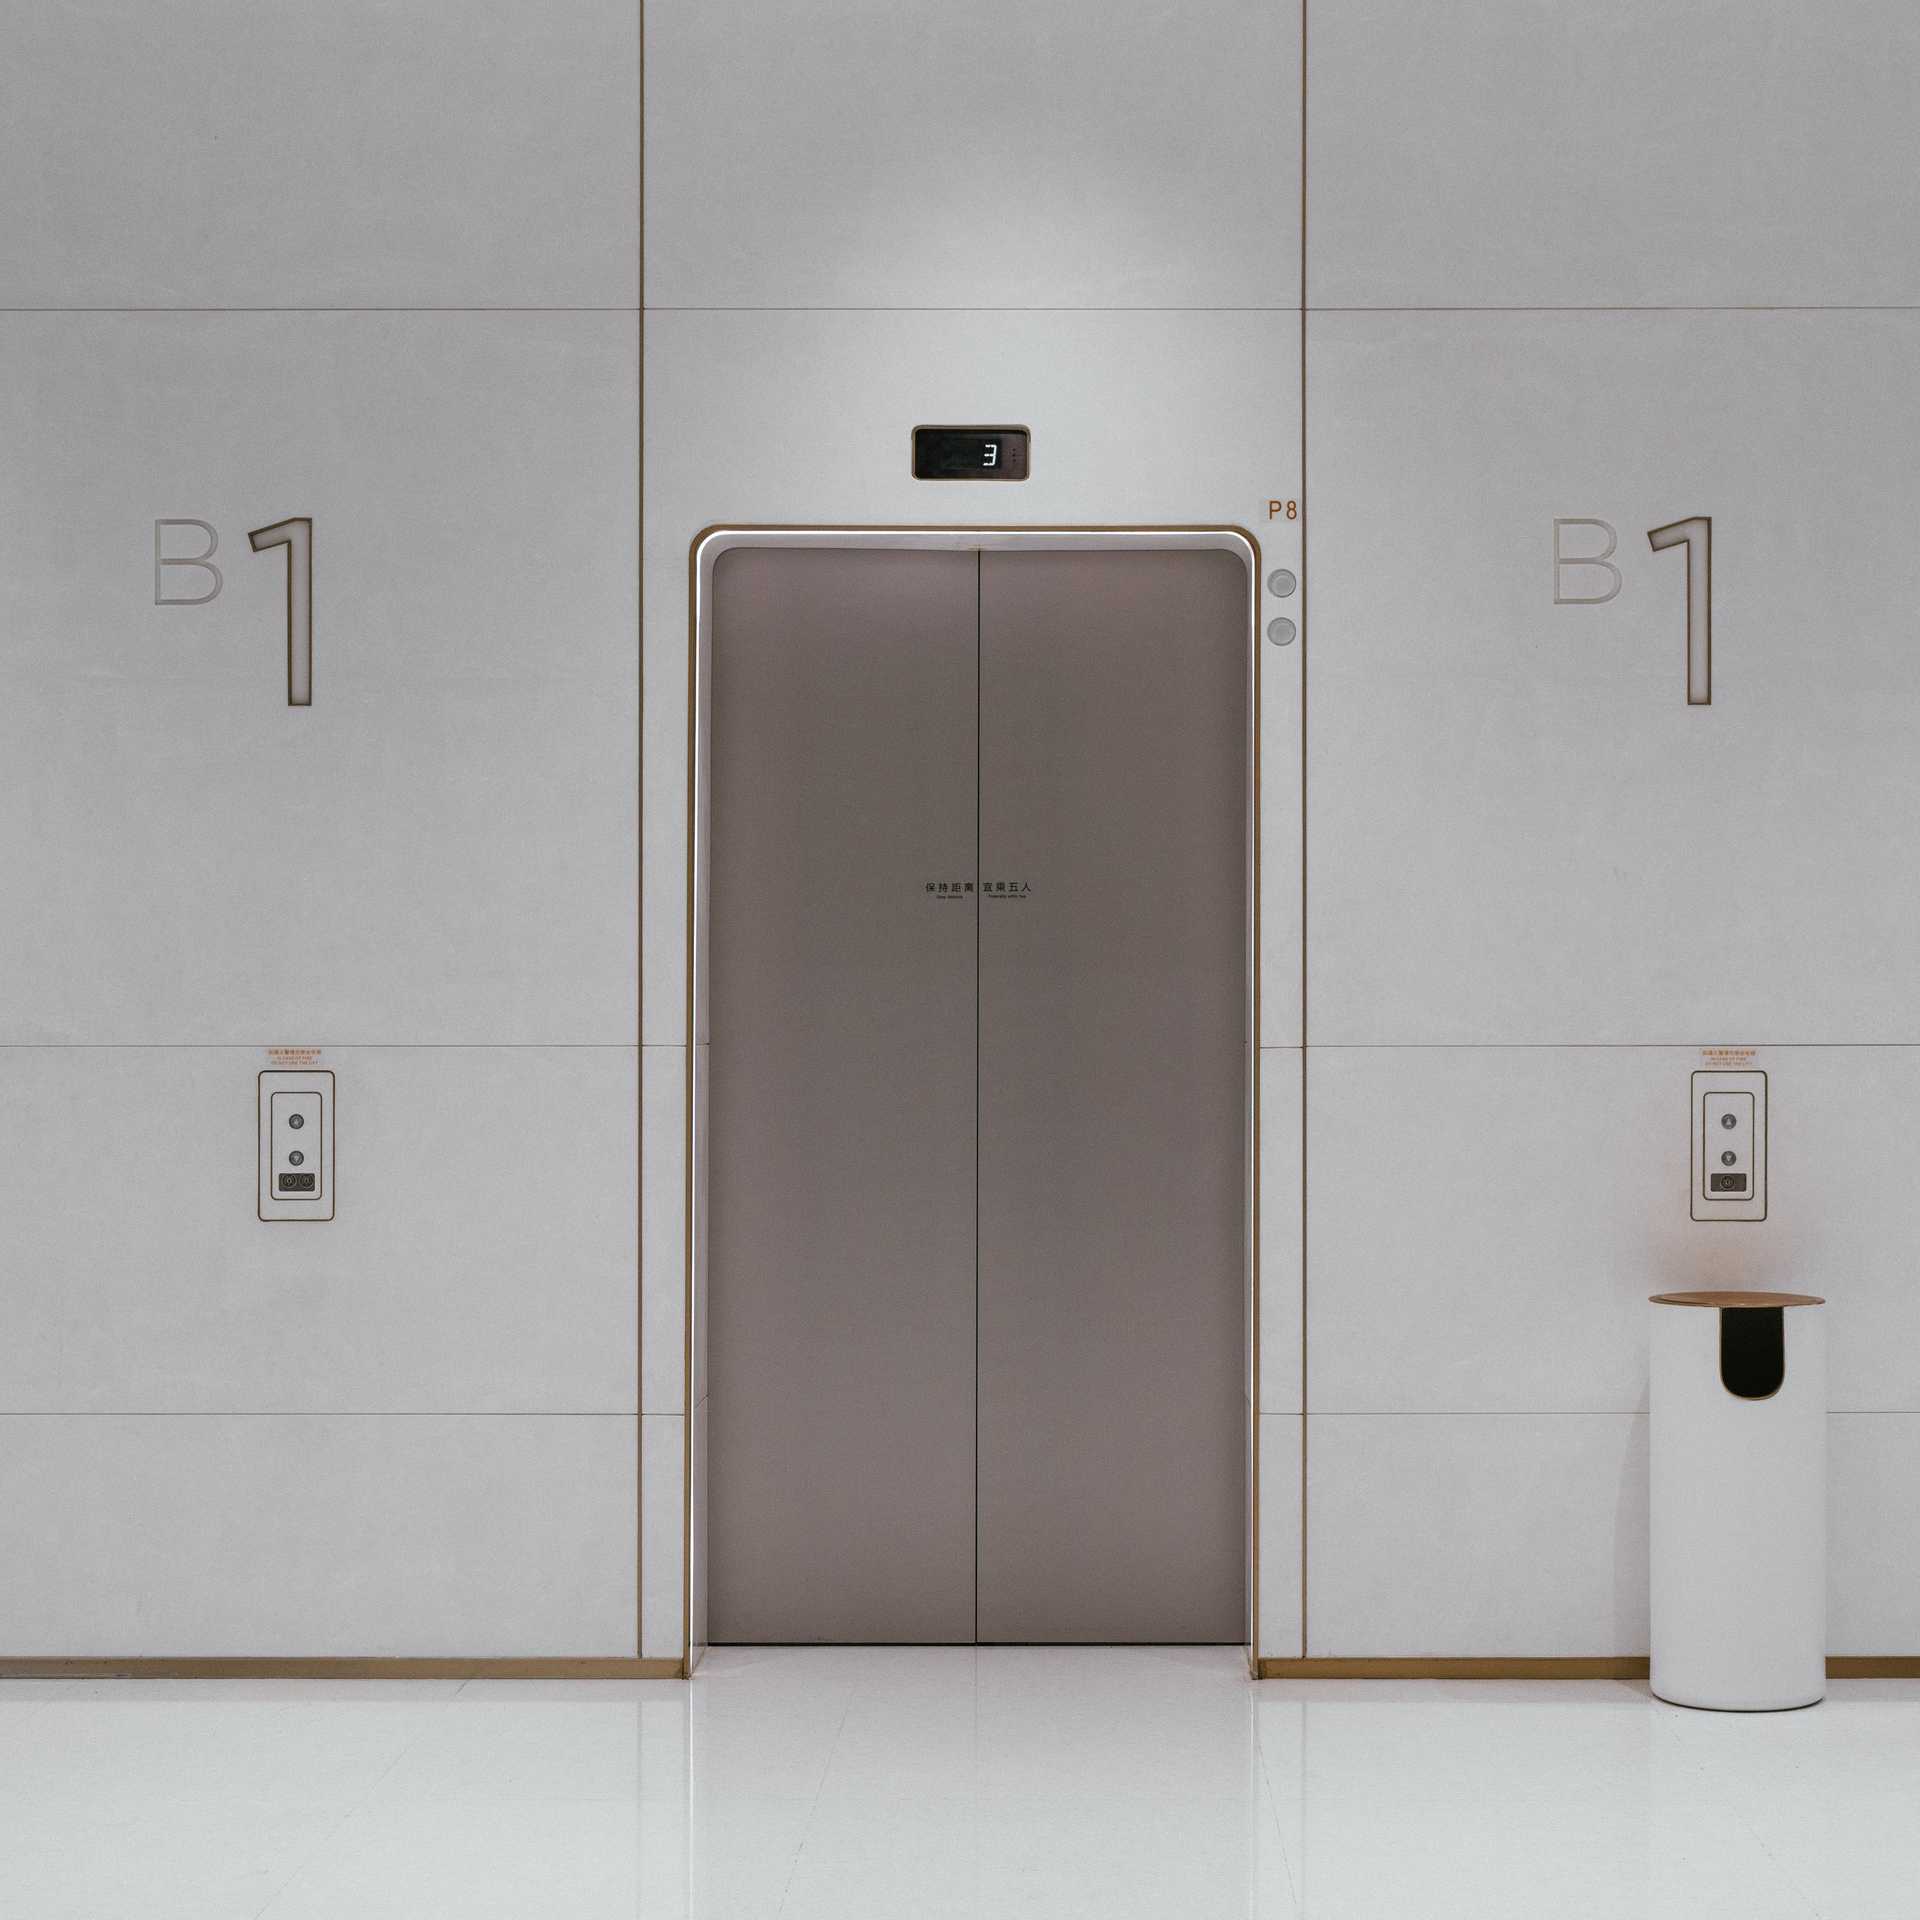 Fotografia eleganckiego wnętrza z białymi ścianami i srebrnymi drzwiami windy. Photo by Edwin Chen on Unsplash.